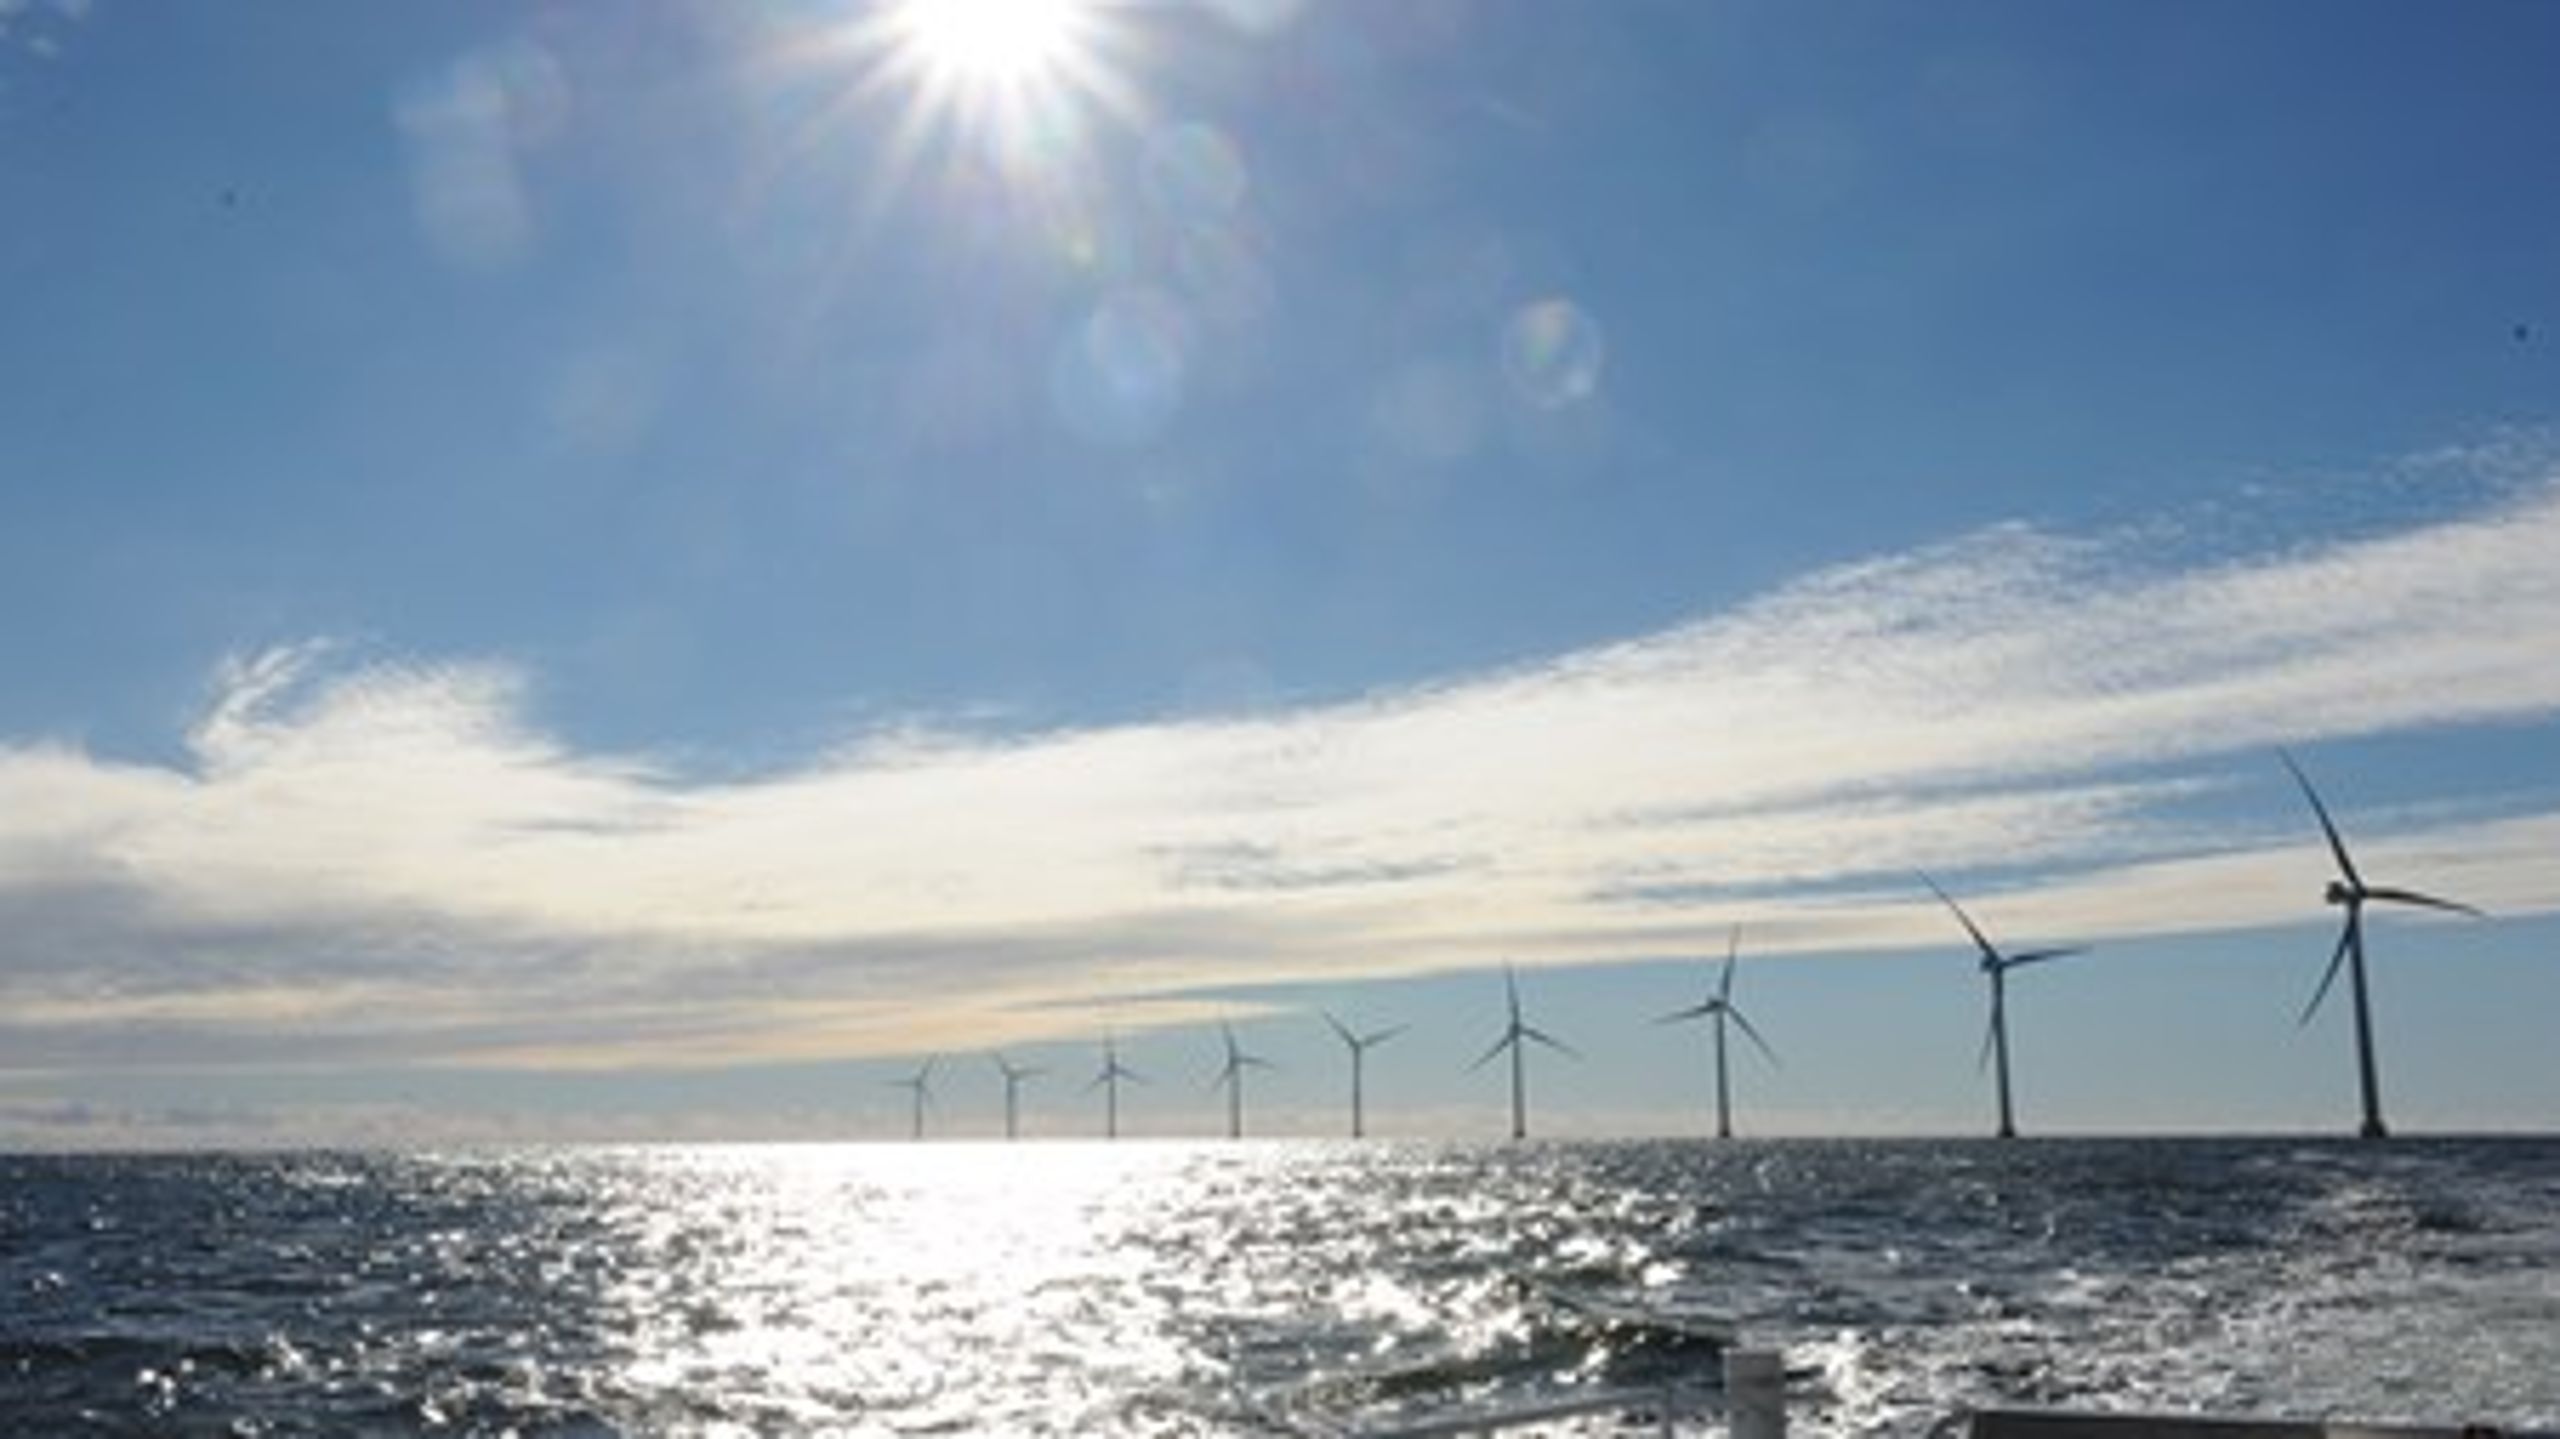 Energibolaget Eons vindkraftspark till havs utanför Öland. Eon är en av flera remissinstanser som vill att regeringen förklarar varför ett statligt stöd för vindkraft till havs ska införas och utifrån den behovsbeskrivningen&nbsp;presenterar ett förslag.